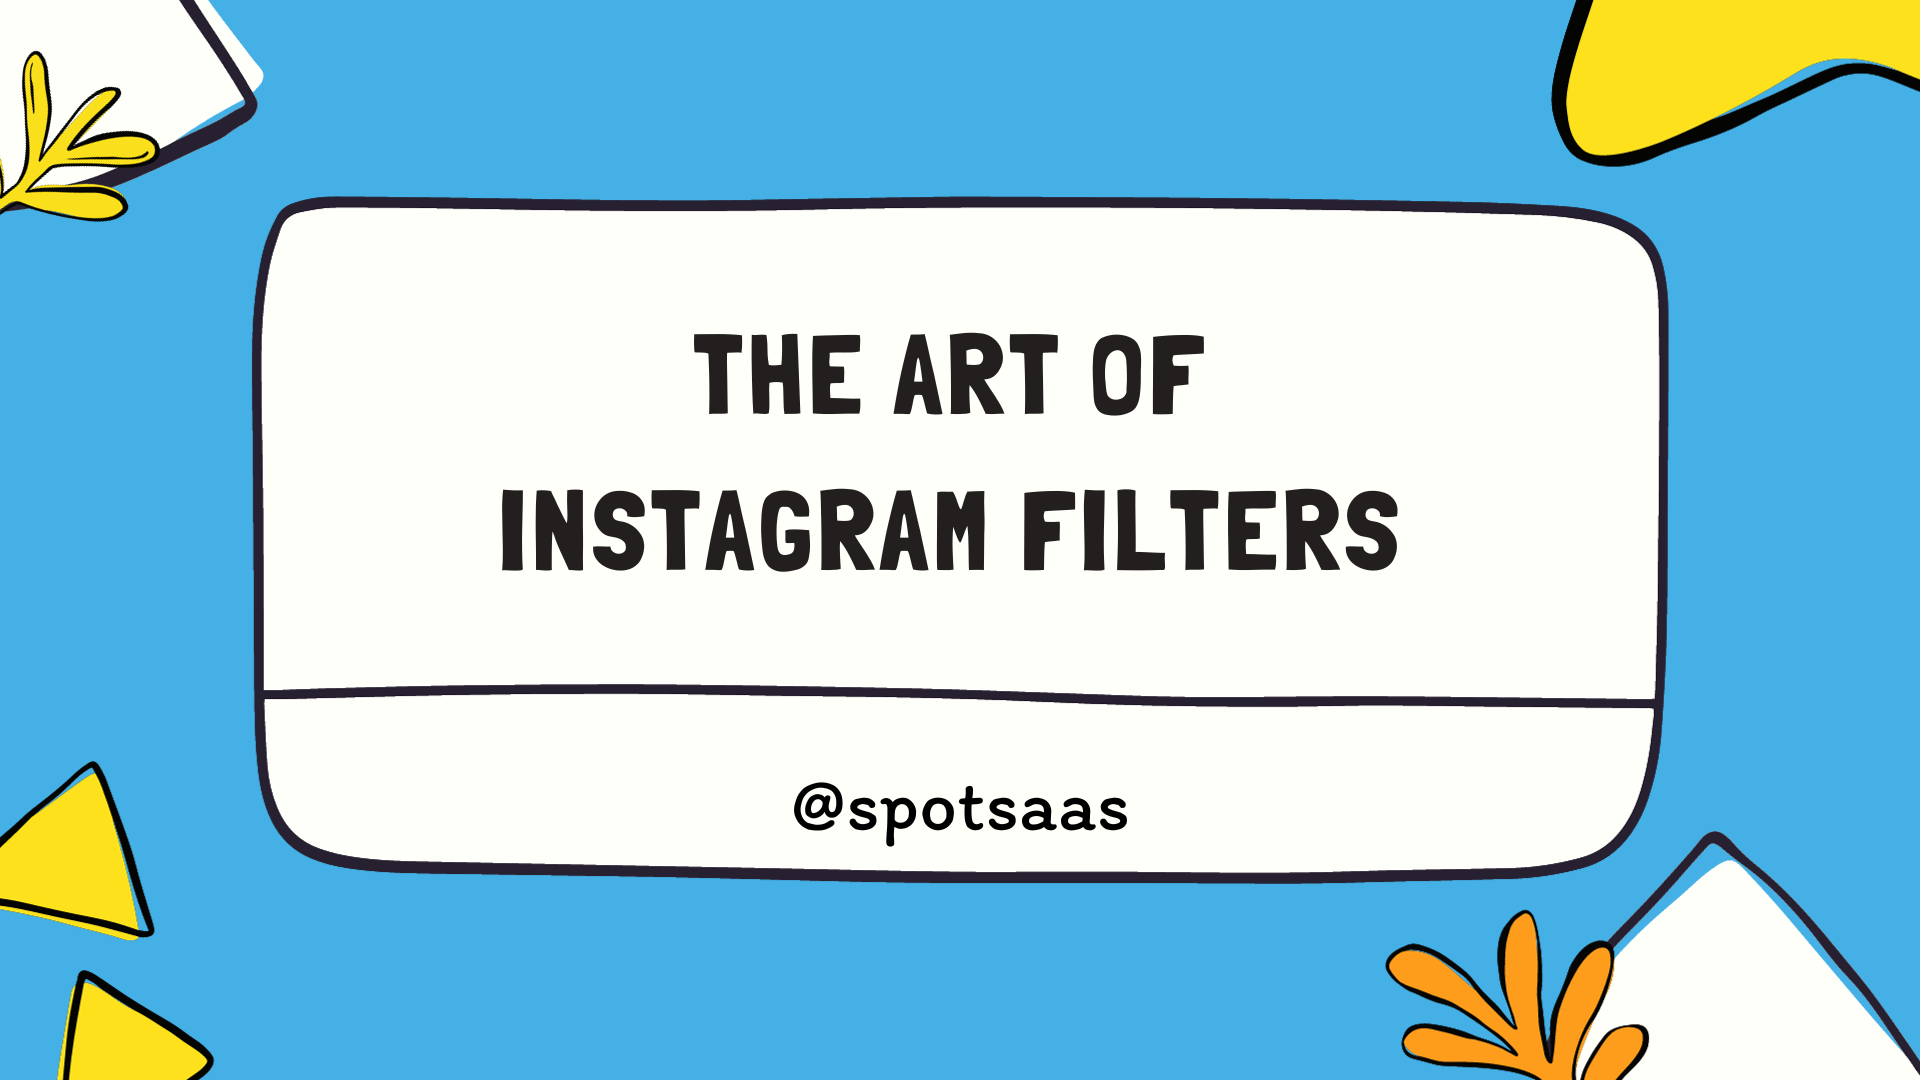 Instagram filters